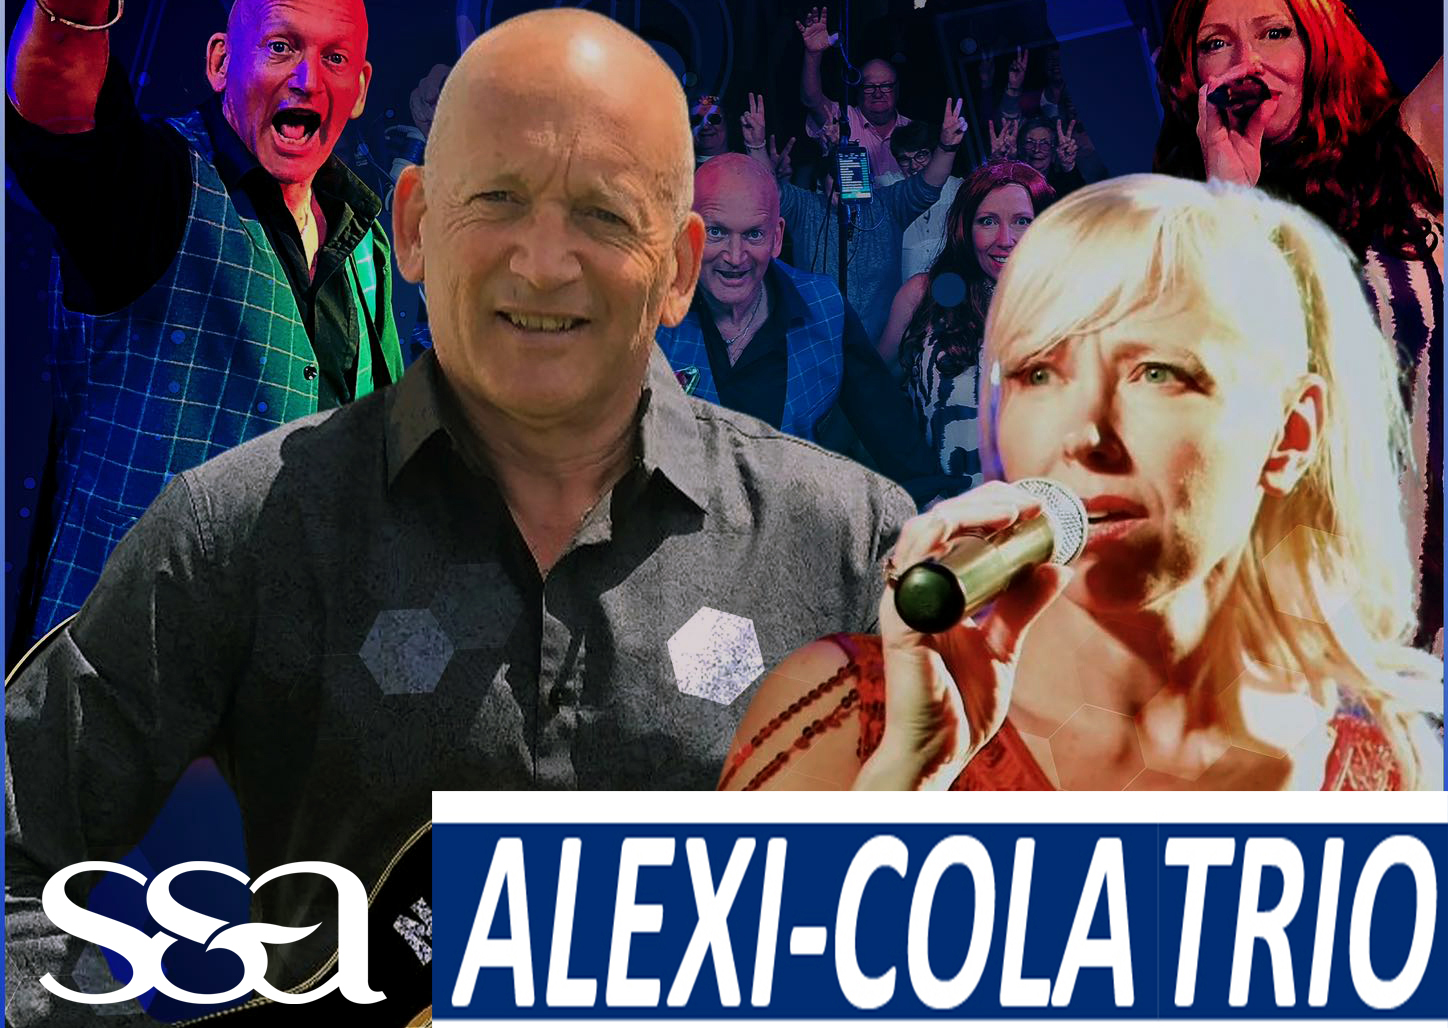 Alexi Cola trio live & free @ SS&A!